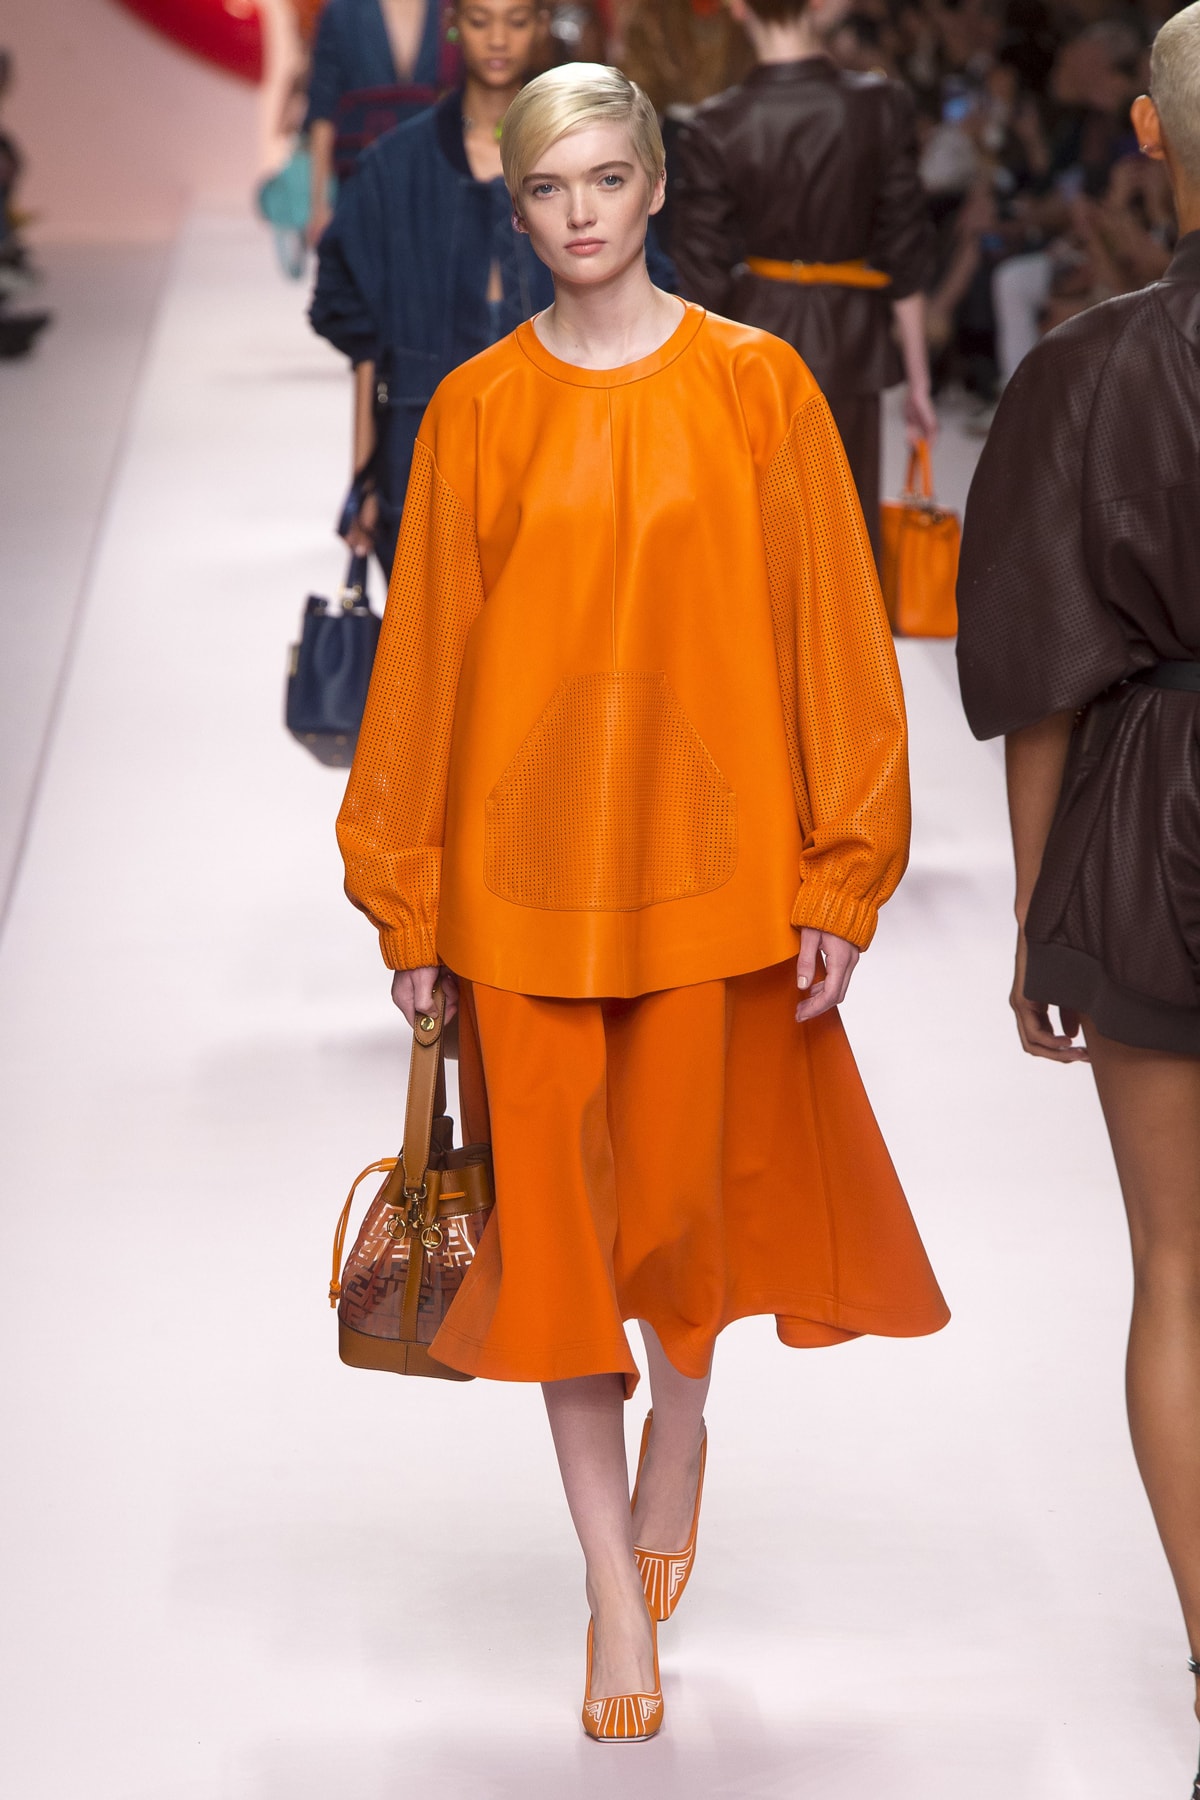 Fendi Karl Lagerfeld Spring Summer 2019 Milan Fashion Week Show Collection Top Skirt Orange